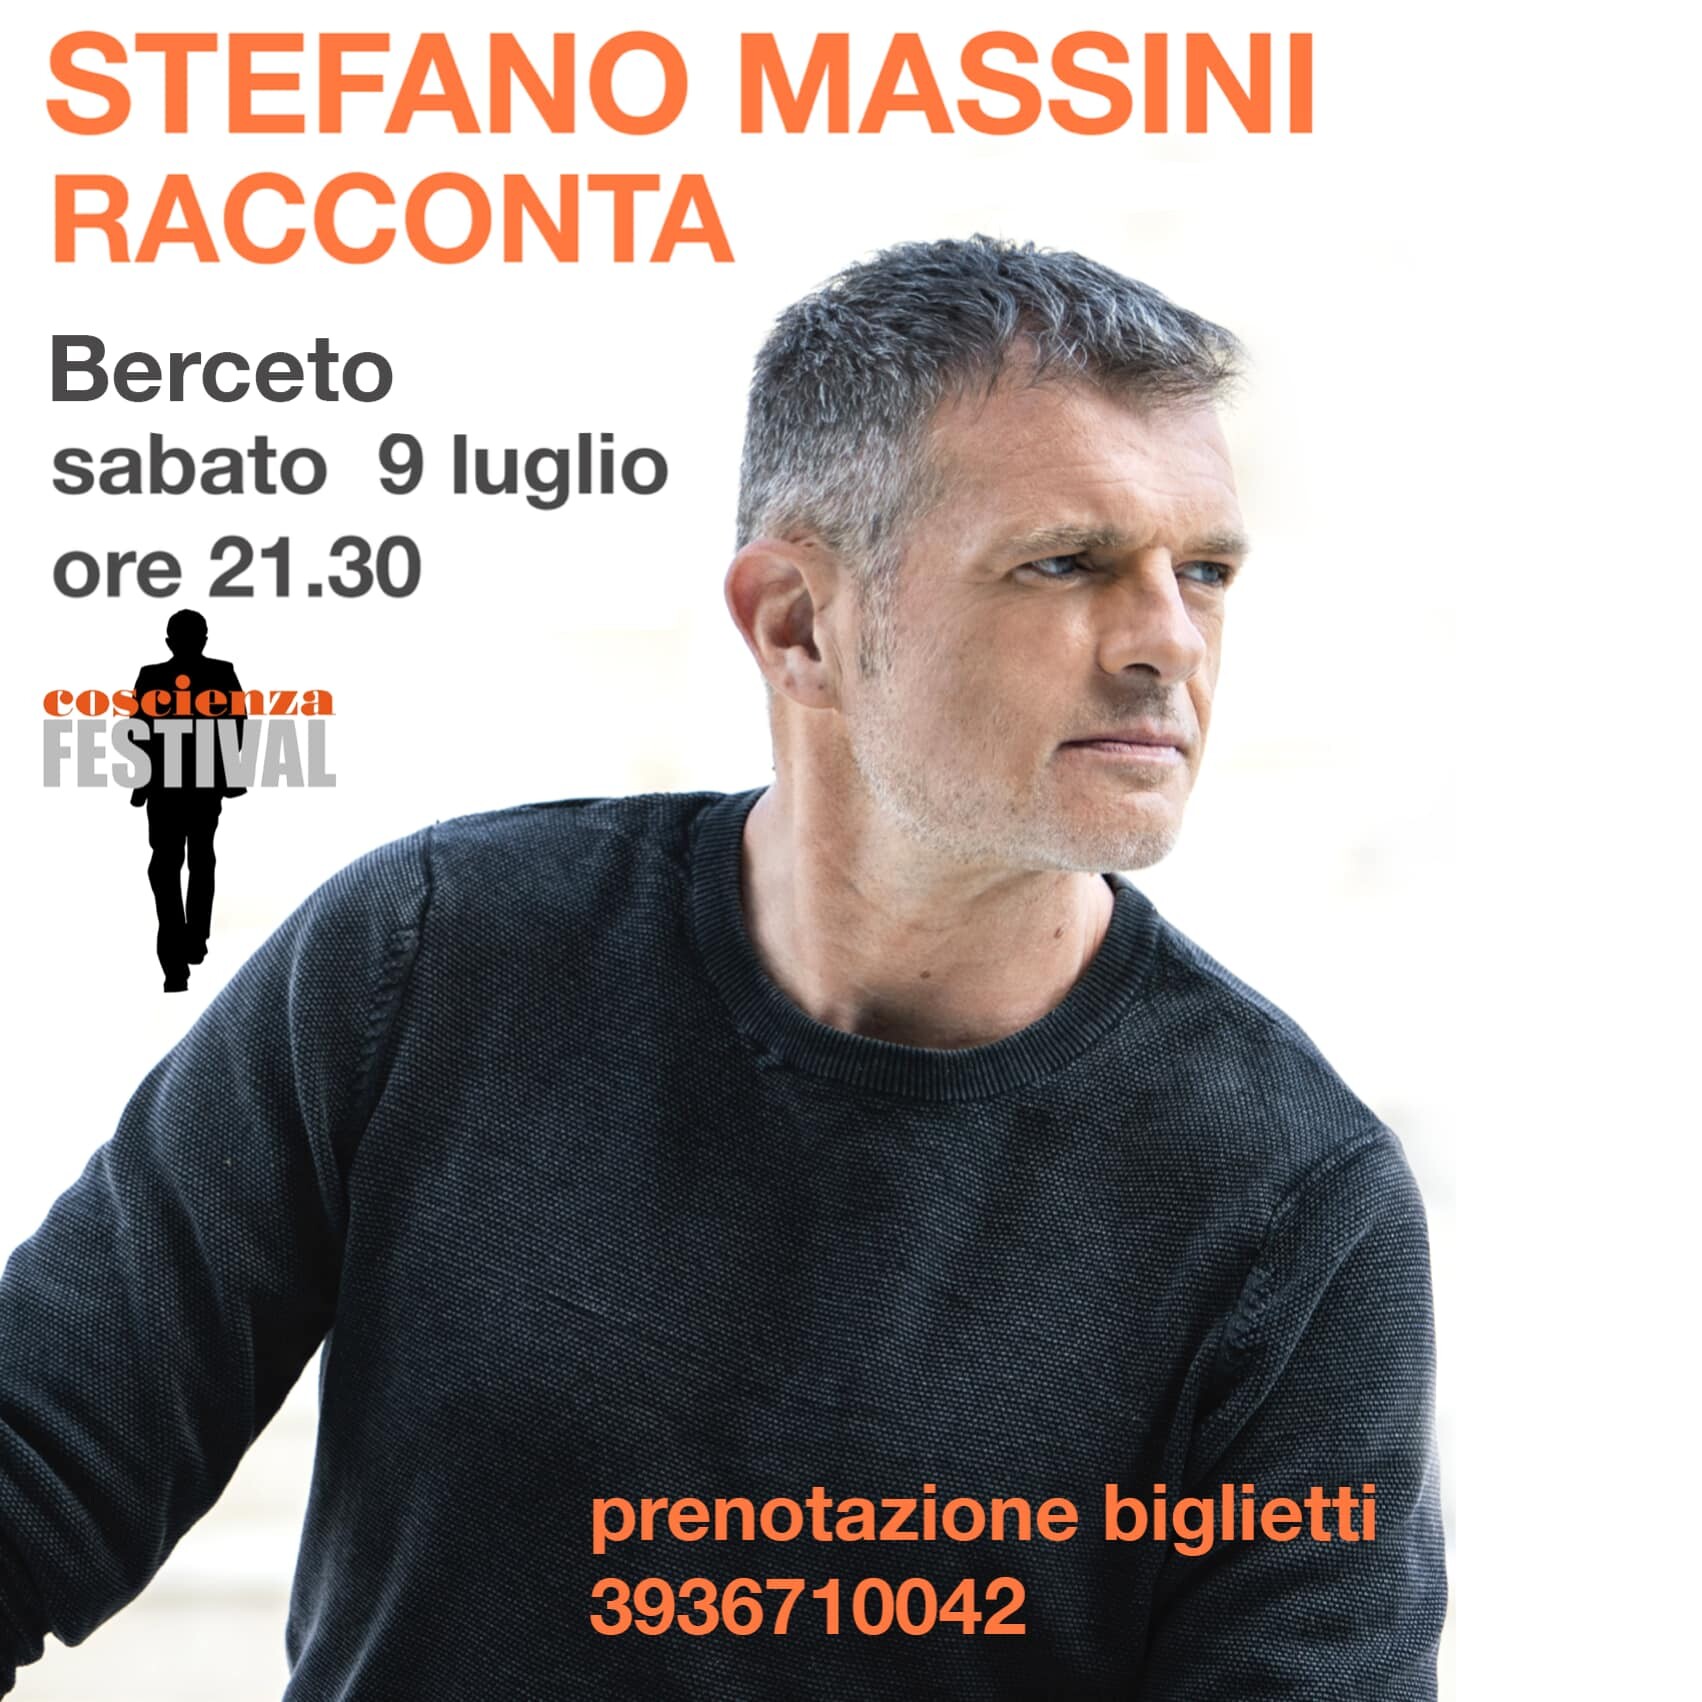 Coscienza festival: Stefano Massini